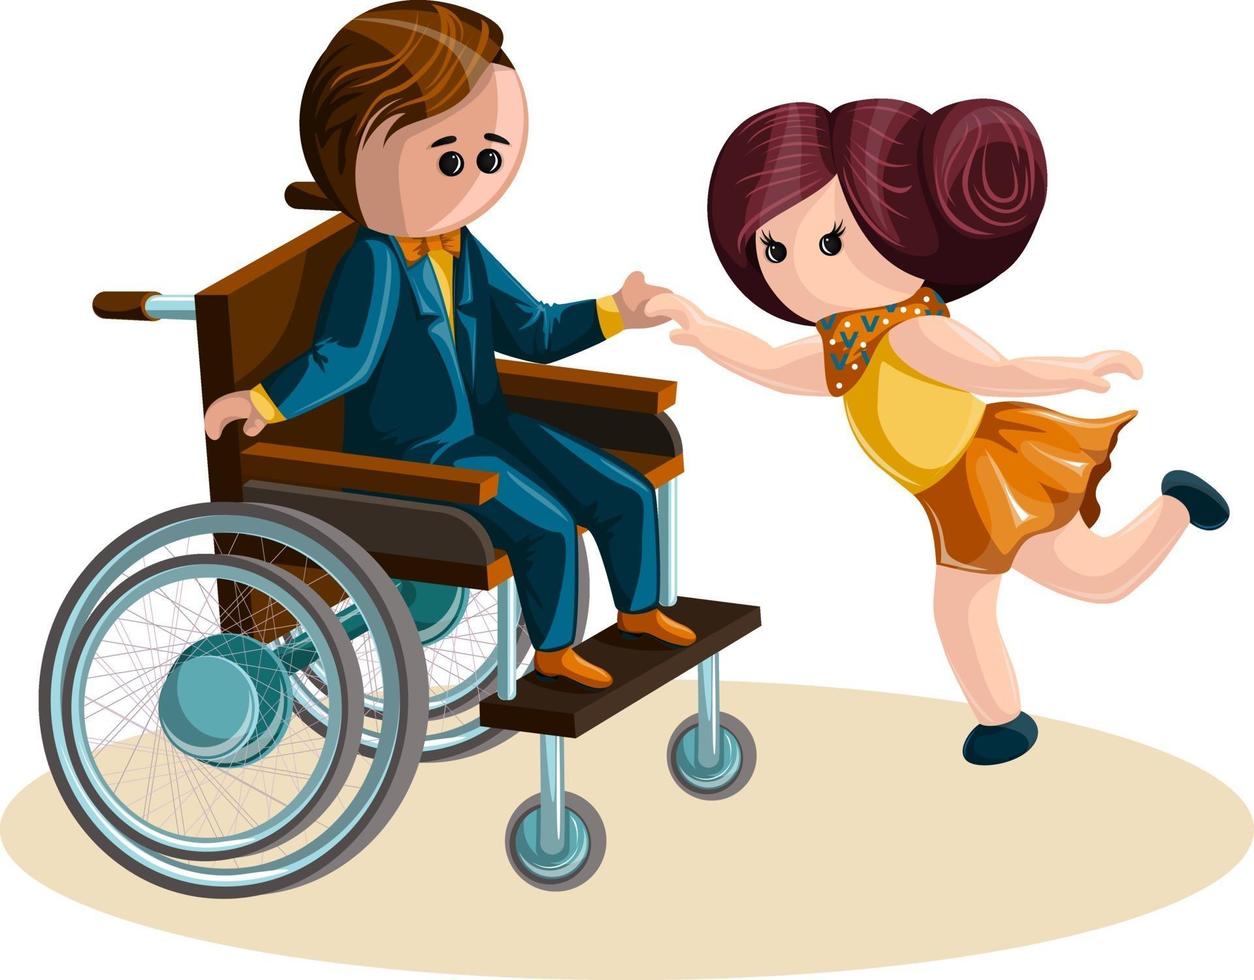 immagine vettoriale di una ragazza che balla con un ragazzo in sedia a rotelle. stile cartone animato.